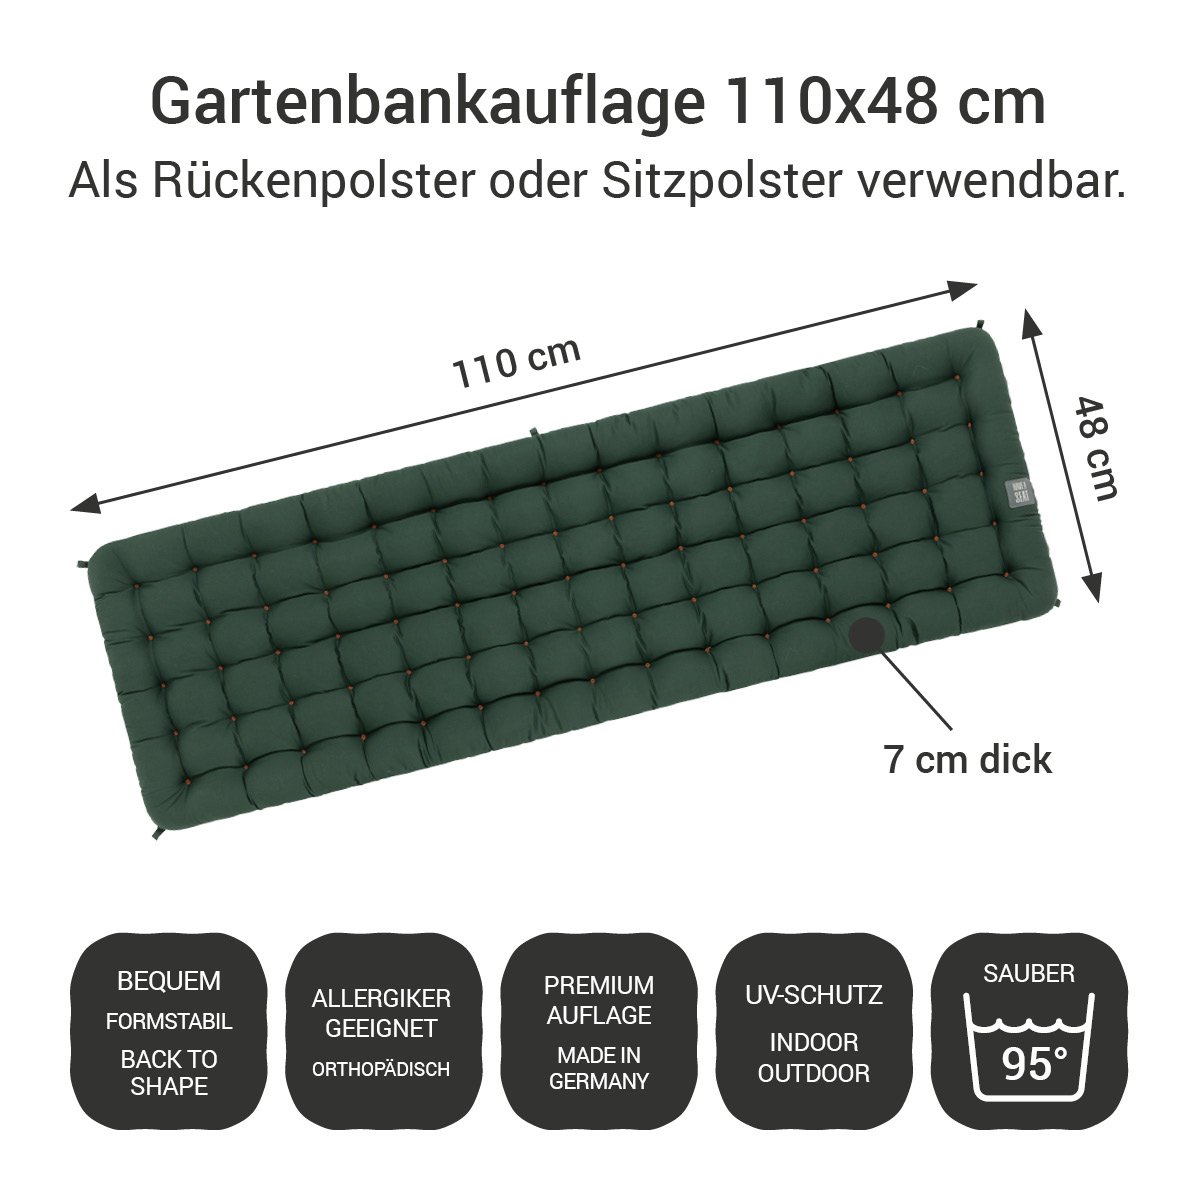 Gartenbank Auflagen (2tlg.) dunkelgrün 110x48 cm / 110 x 50 cm | bequem & orthopädisch, komplett im Ganzen waschbar bis 95°C, wetterfest, Made in Germany